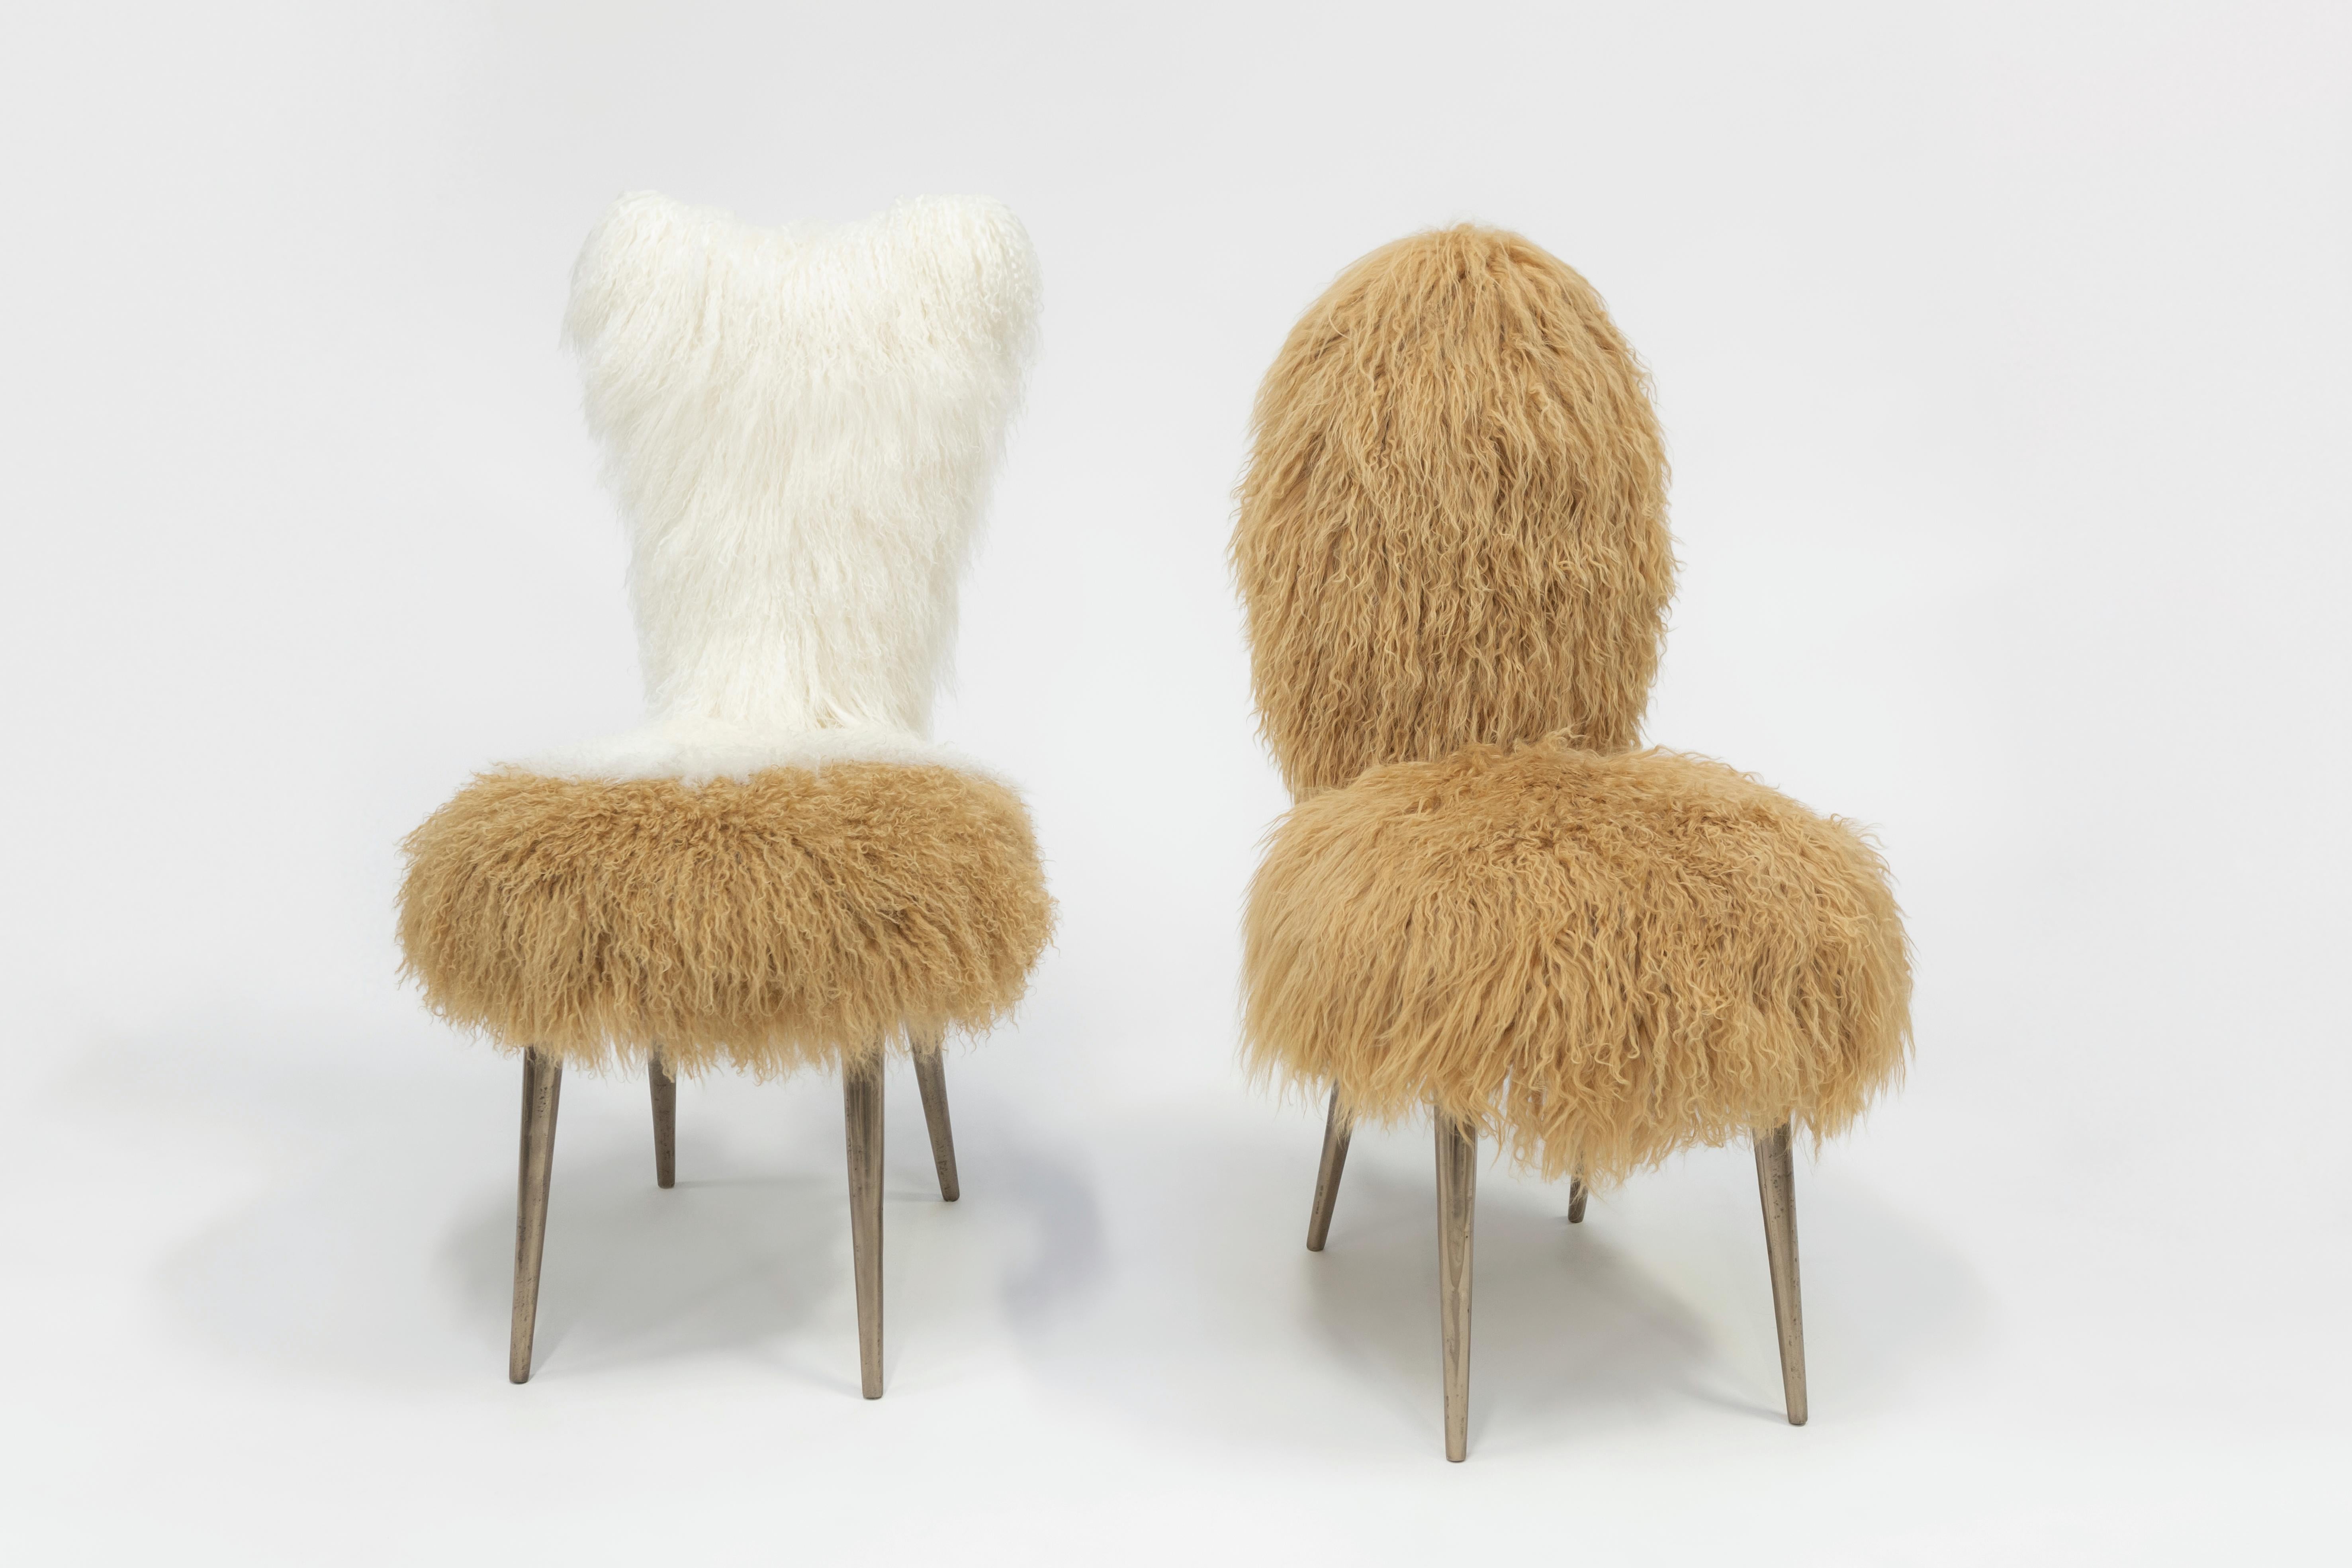 20th Century Vintage Chairs 1950 by U. Mascagni, Trasformed by Draga&Aurel, Fur, 21st Century